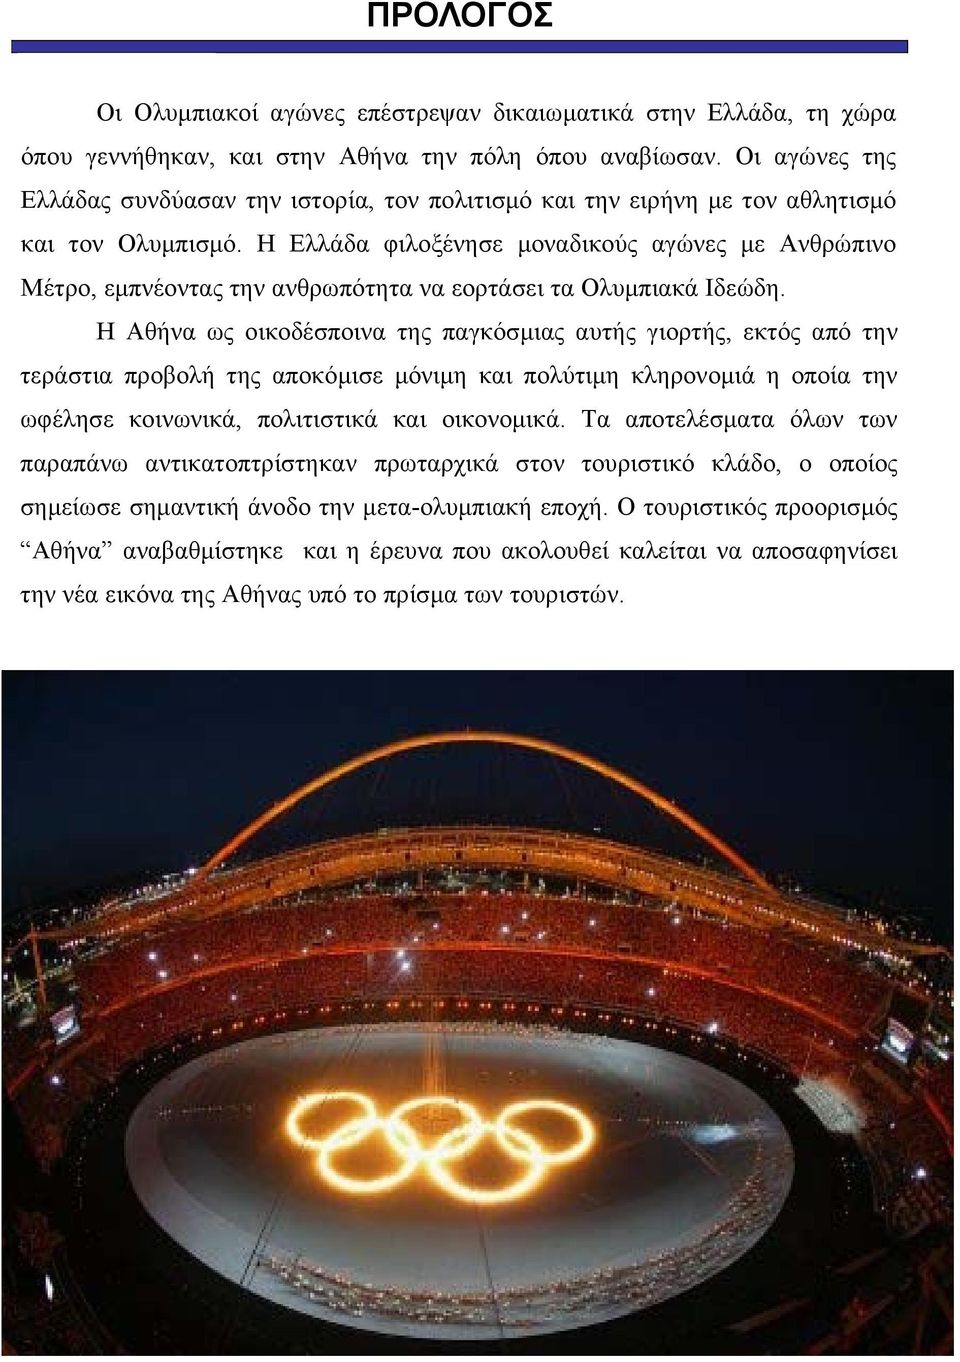 Η Ελλάδα φιλοξένησε μοναδικούς αγώνες με Ανθρώπινο Μέτρο, εμπνέοντας την ανθρωπότητα να εορτάσει τα Ολυμπιακά Ιδεώδη.